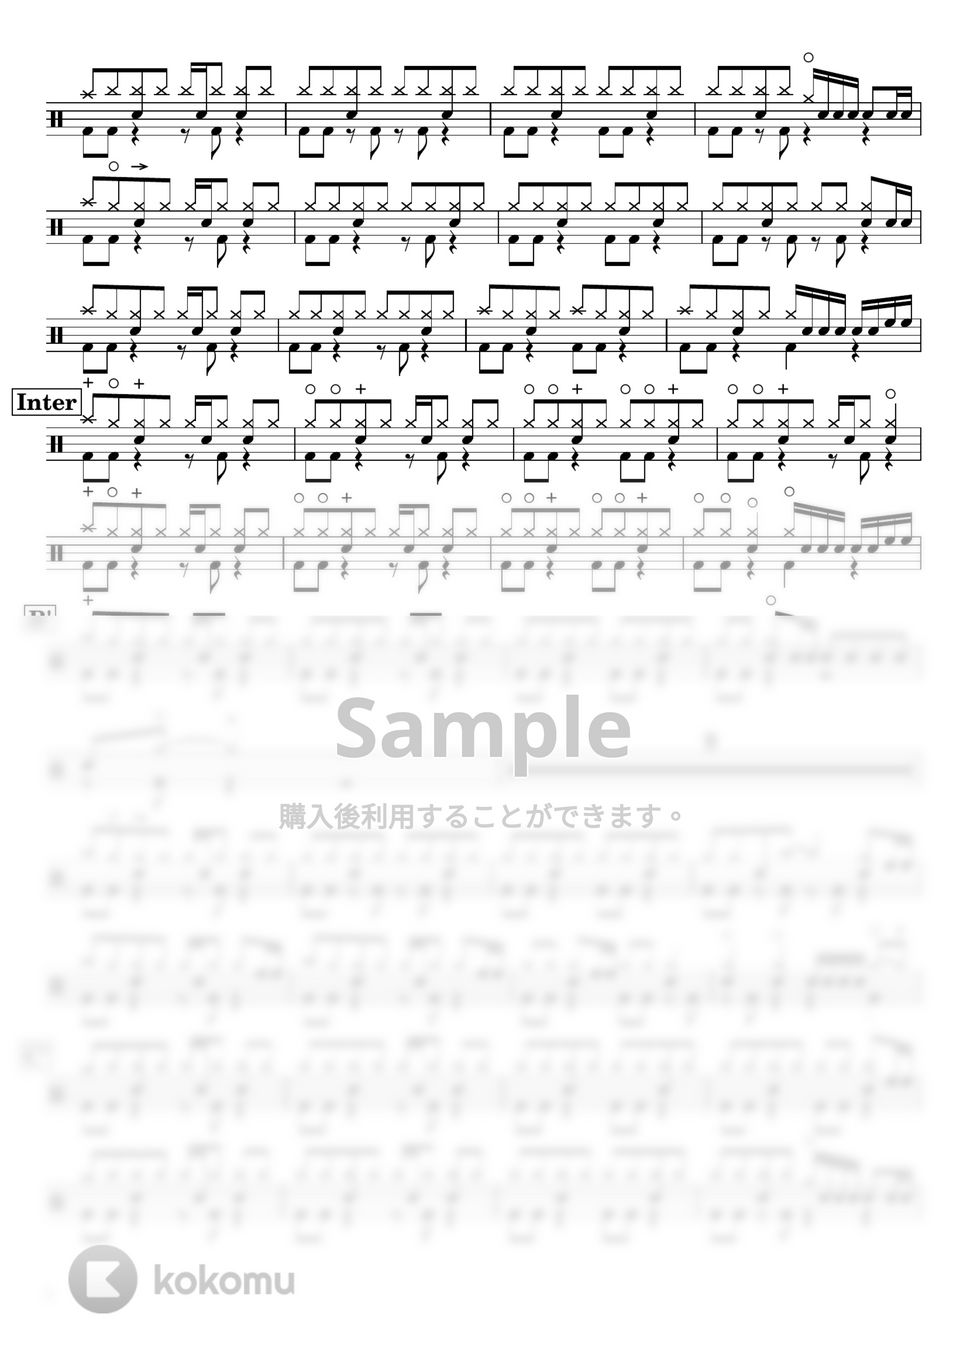 クリープハイプ - 【ドラム譜】イノチミジカシコイセヨオトメ【完コピ】 by Taiki Mizumoto